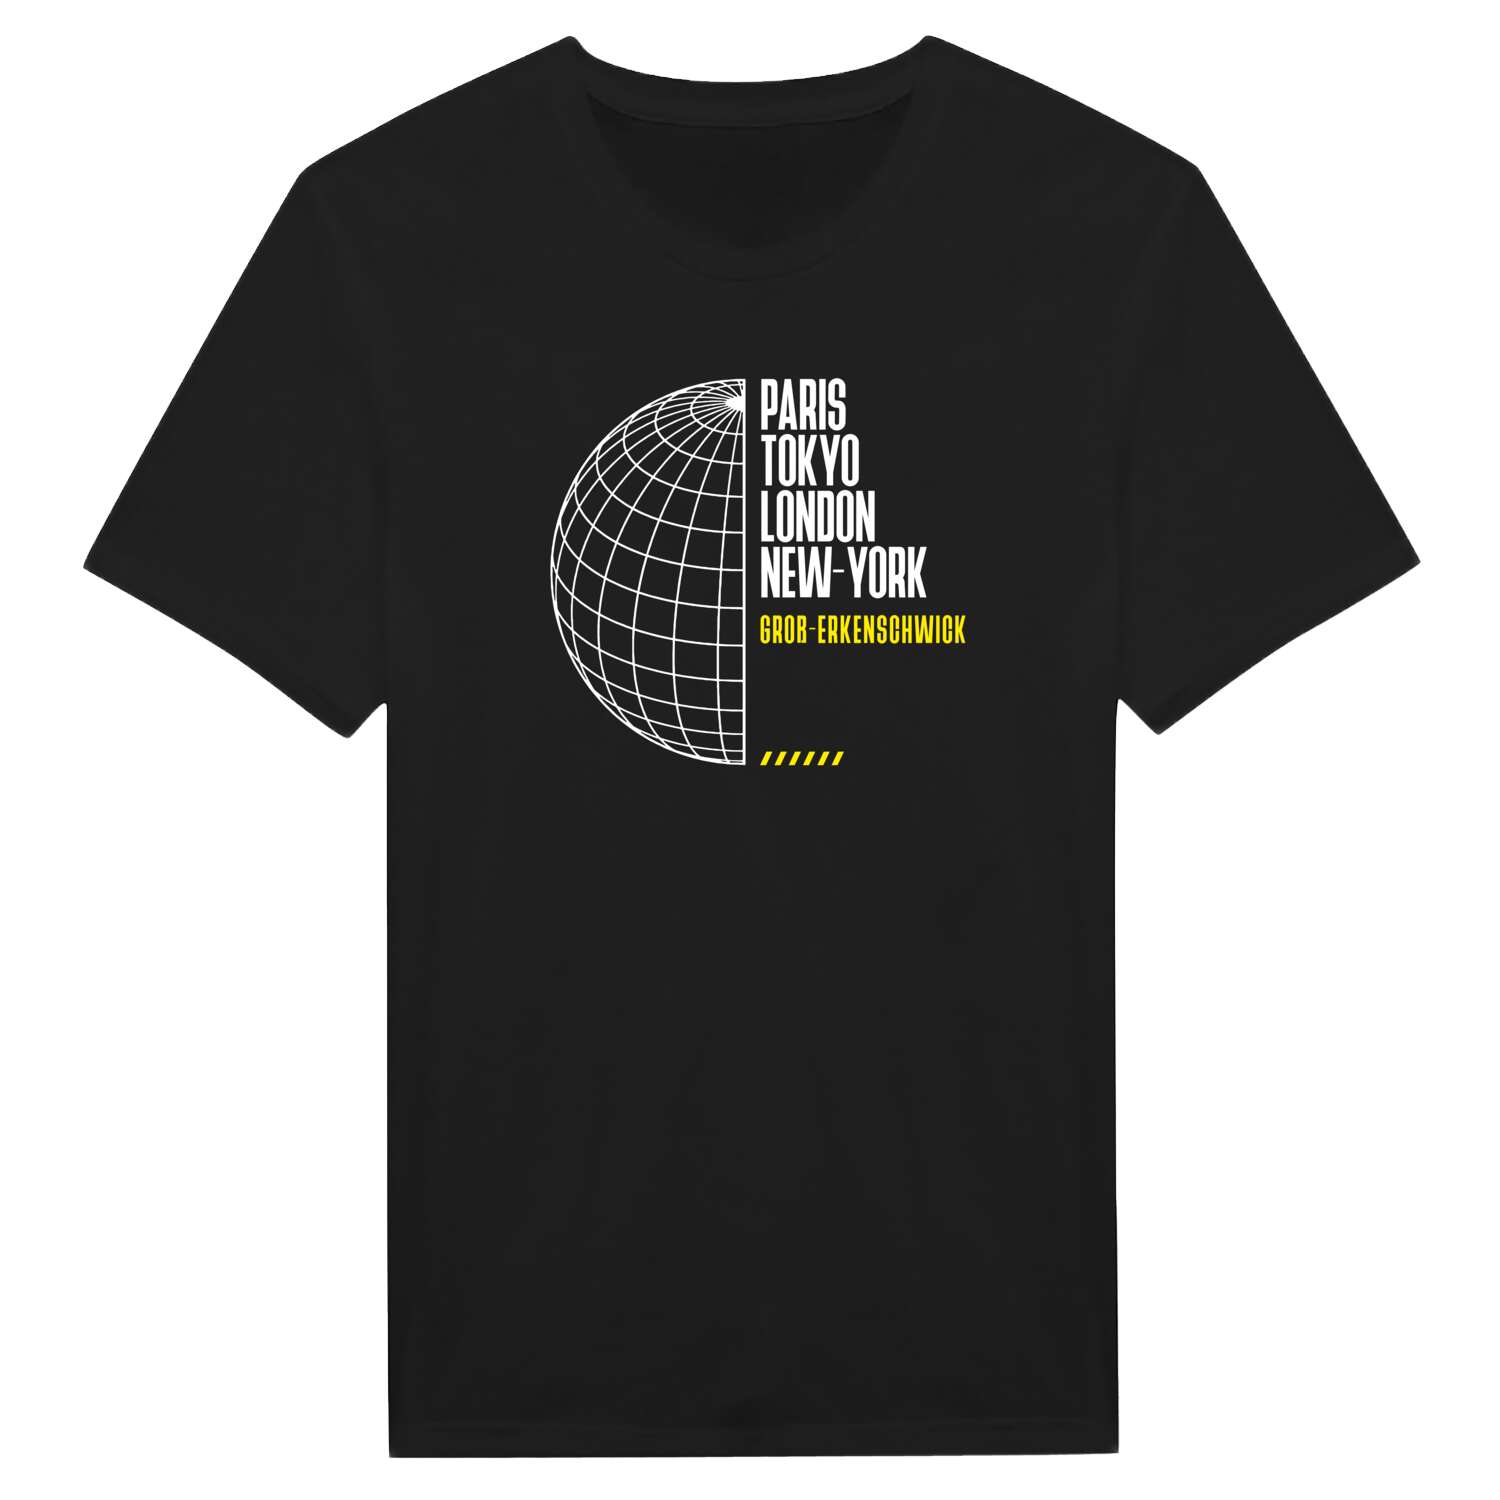 Groß-Erkenschwick T-Shirt »Paris Tokyo London«